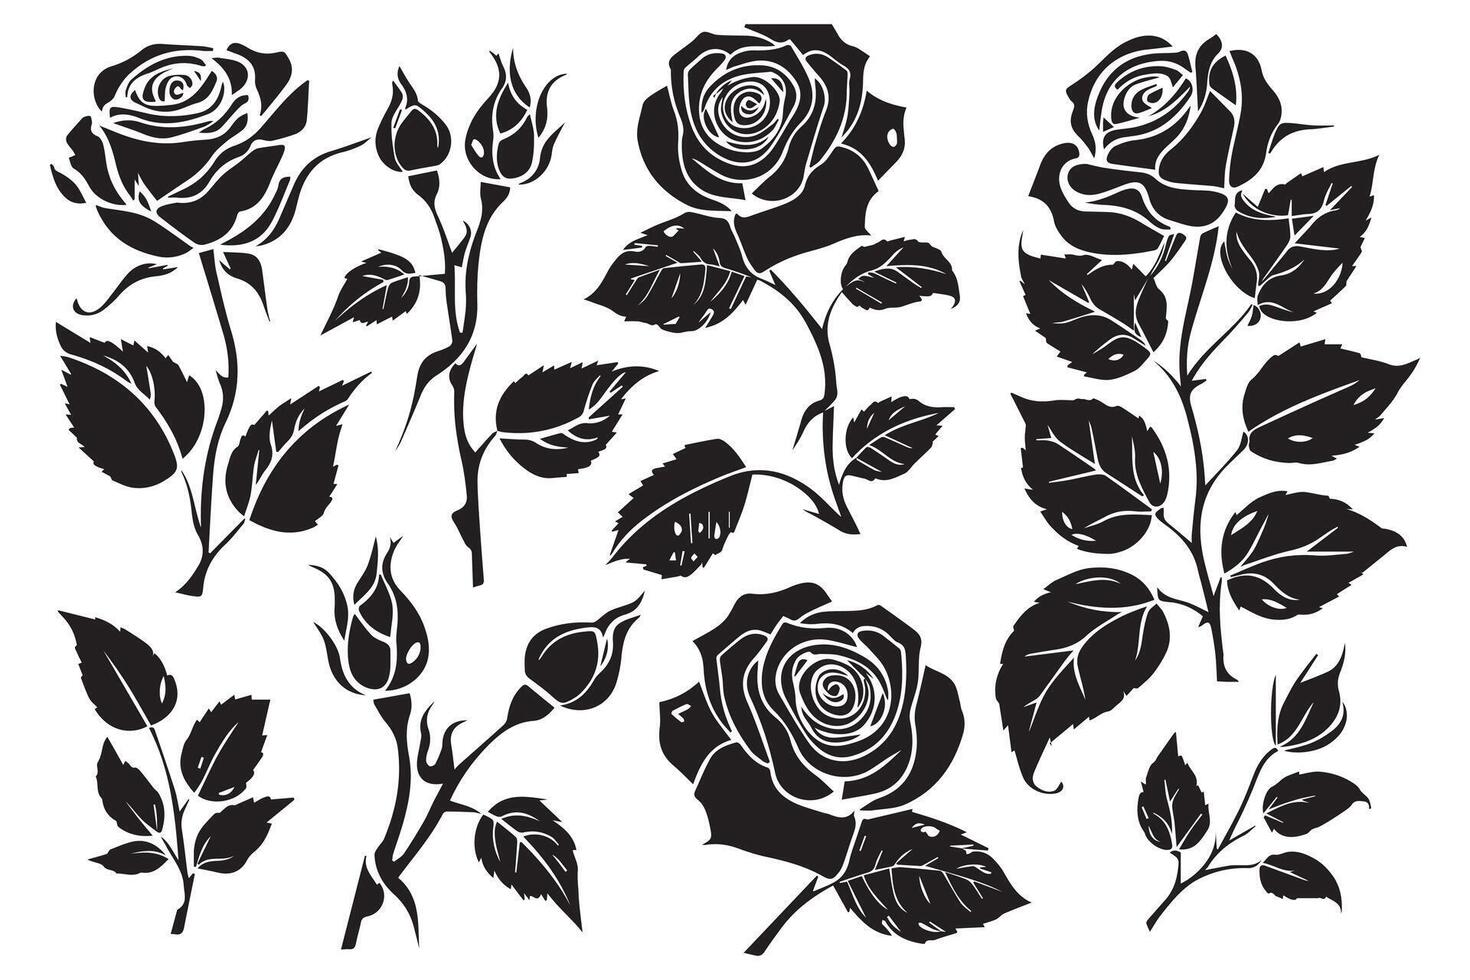 schwarz Schlampe einstellen von Rose mit Blätter Blume schwarz silhoutte Weiß Hintergrund vektor